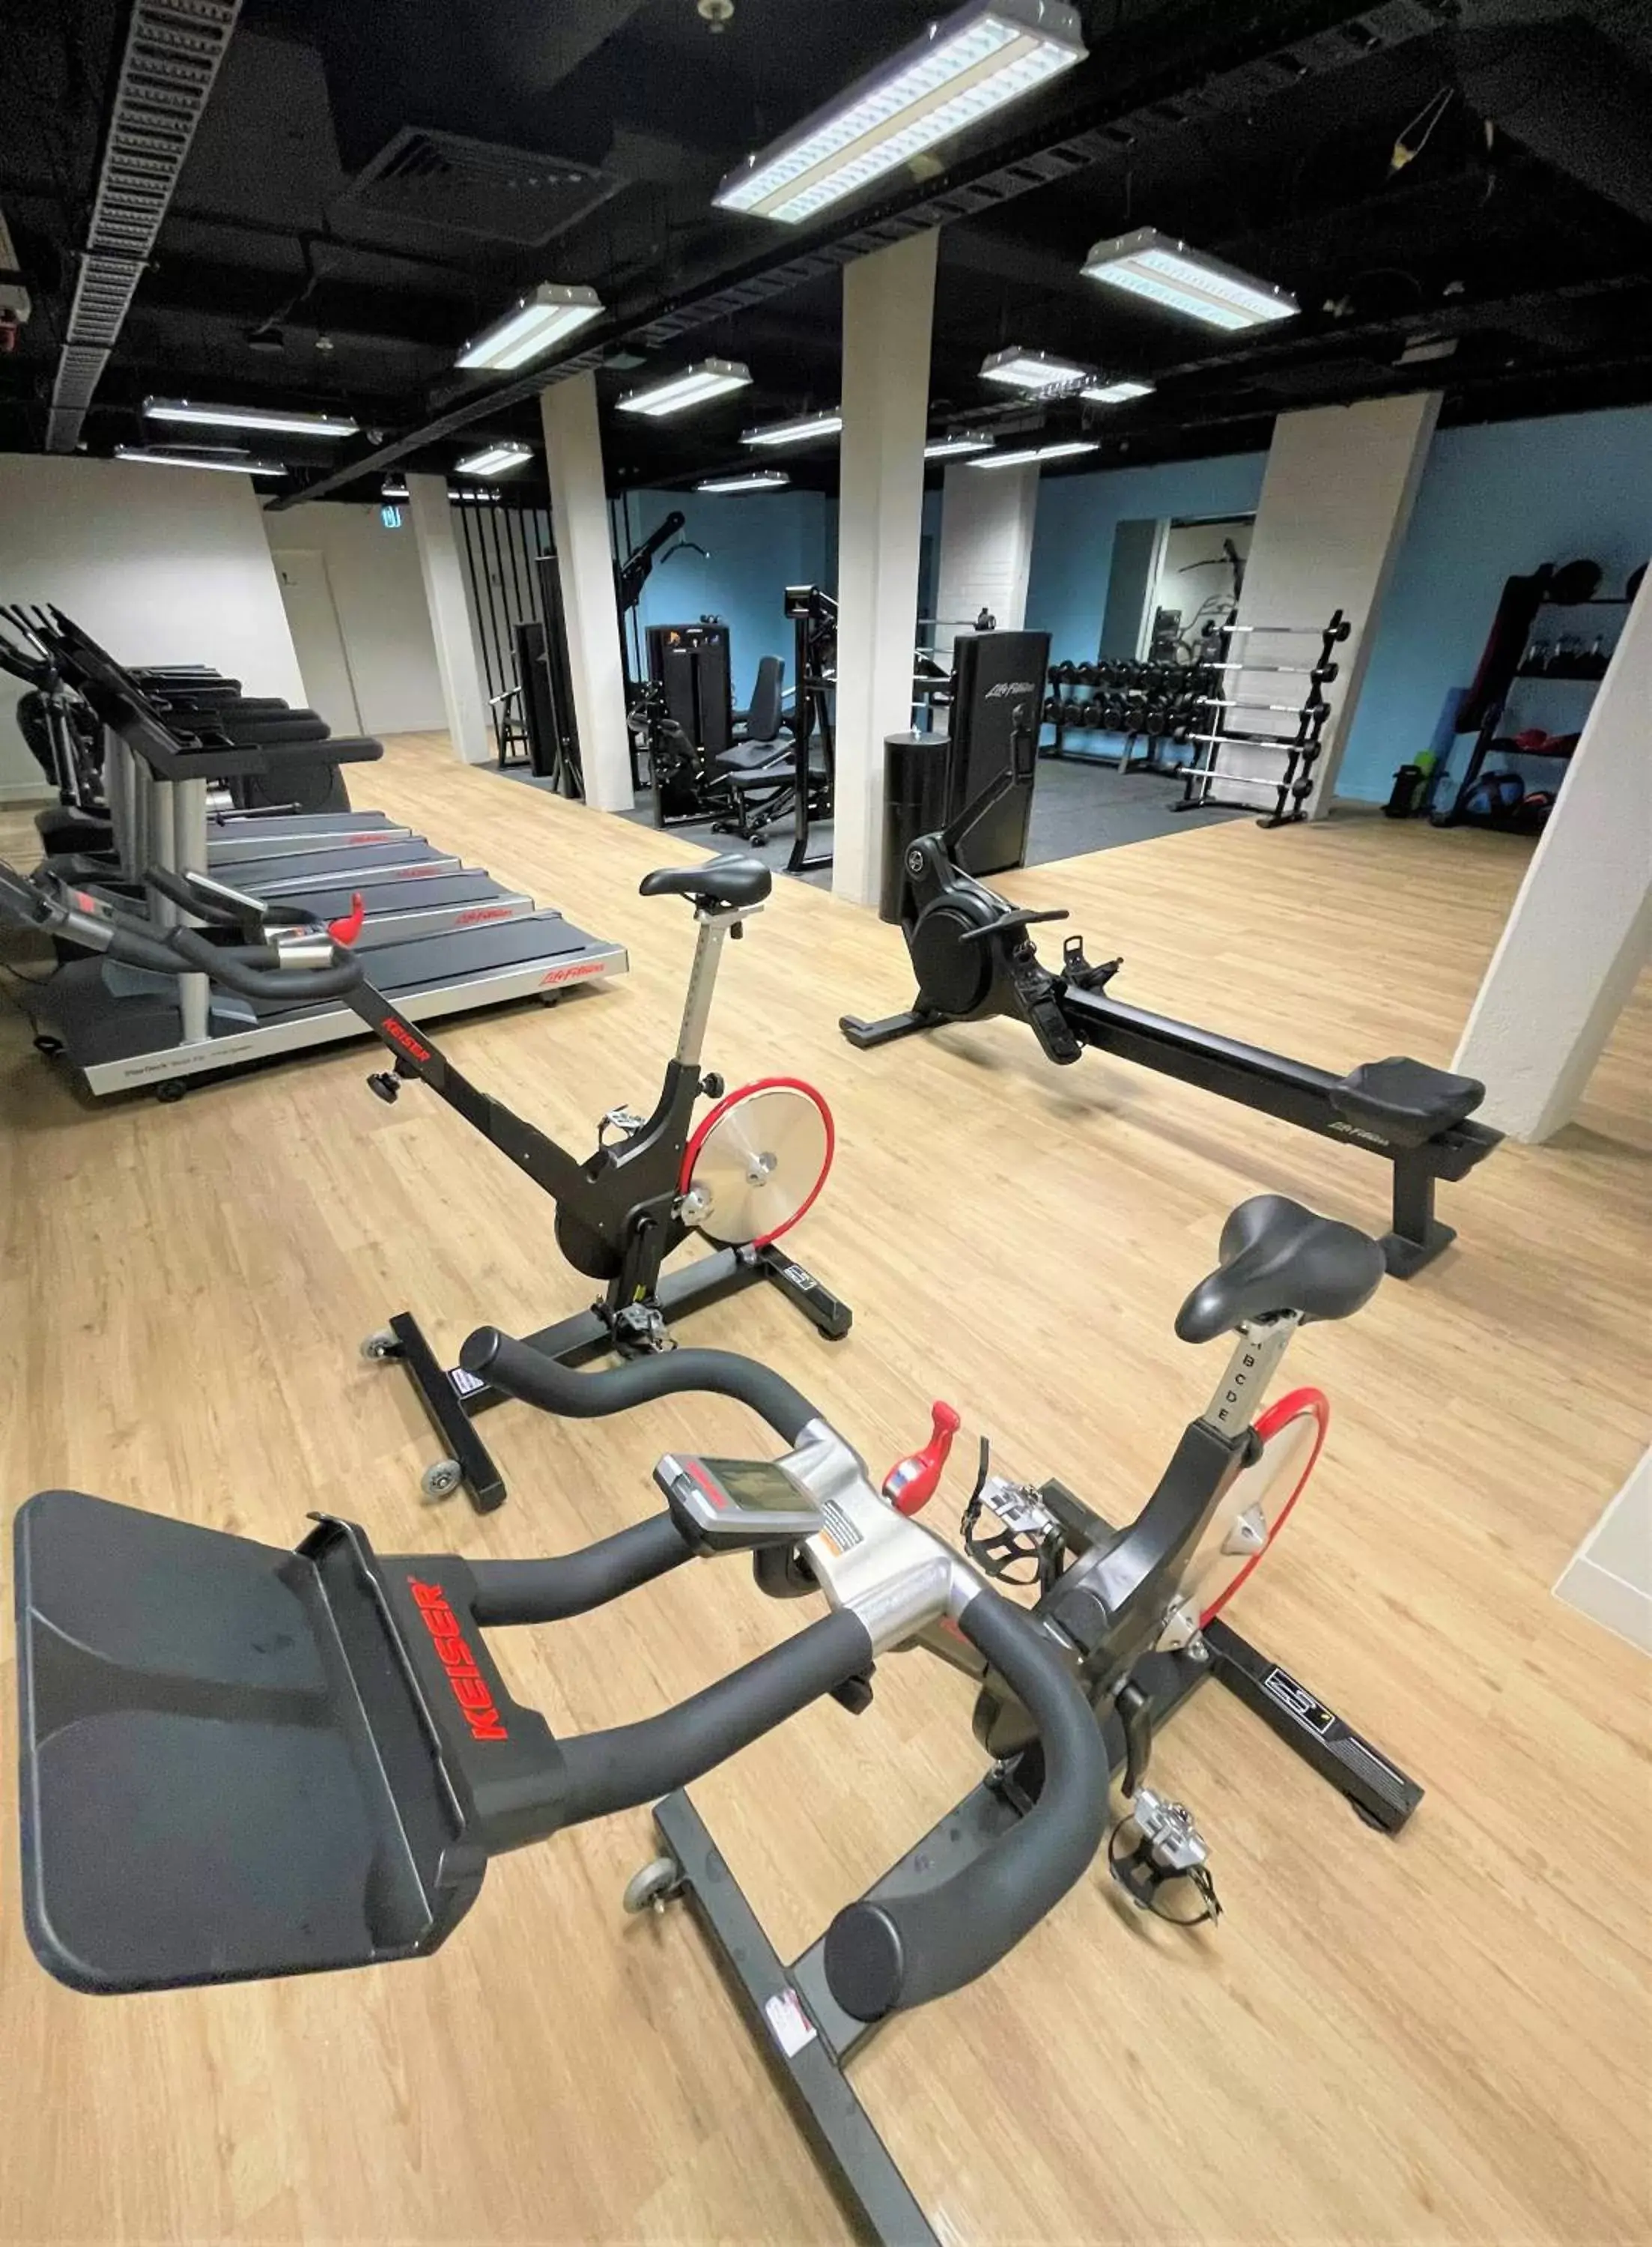 Fitness centre/facilities, Fitness Center/Facilities in Novotel Melbourne Preston